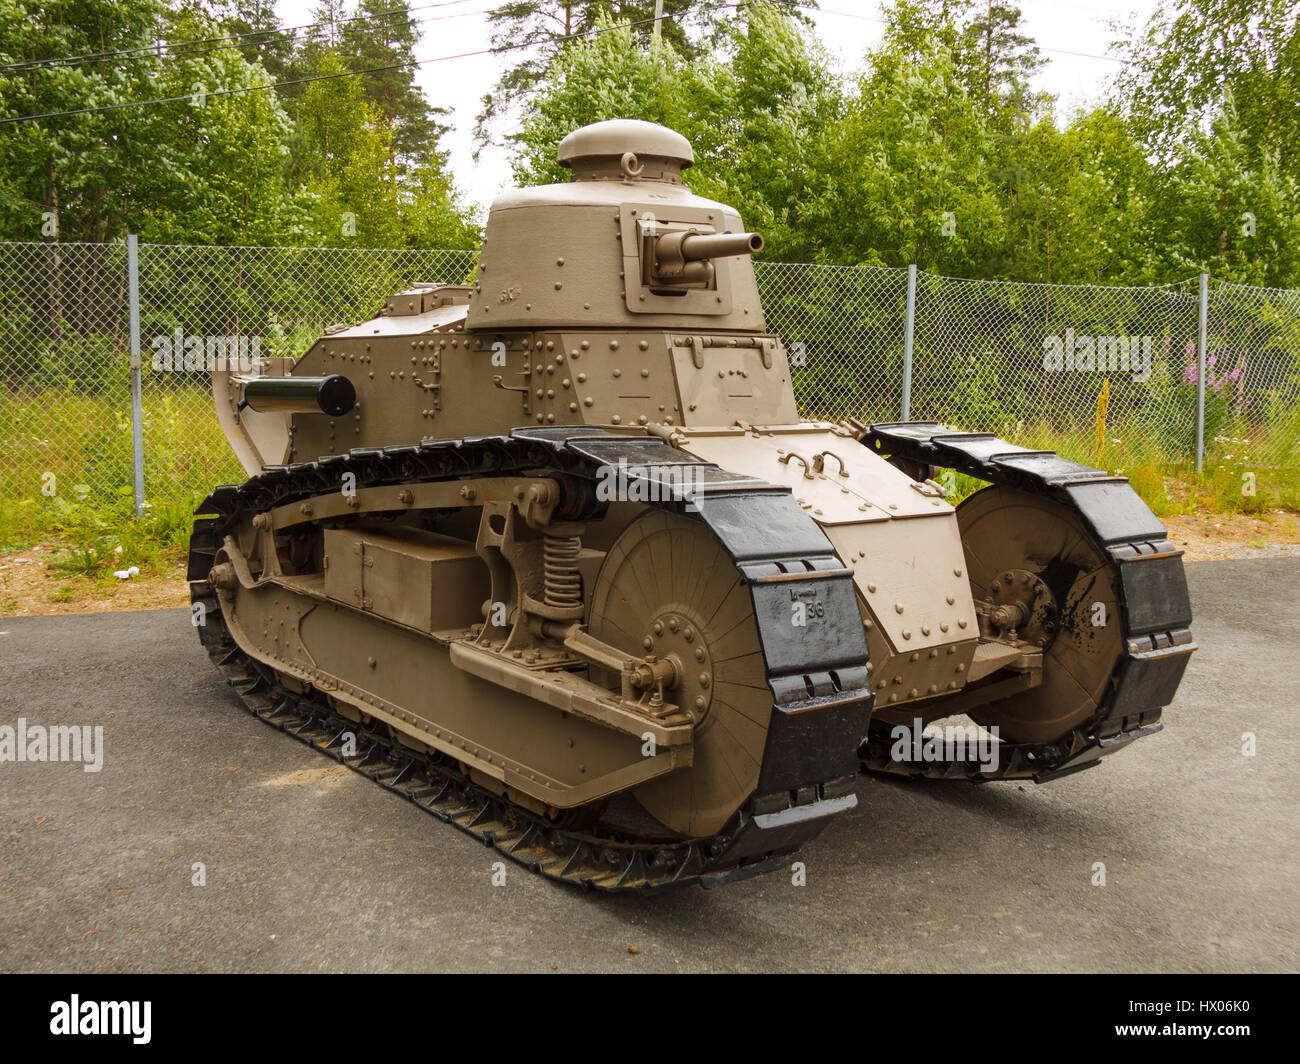 Renault FT17 tank historique de l'armée finlandaise à l'affiche au Musée des armures Parola, Finlande. Banque D'Images